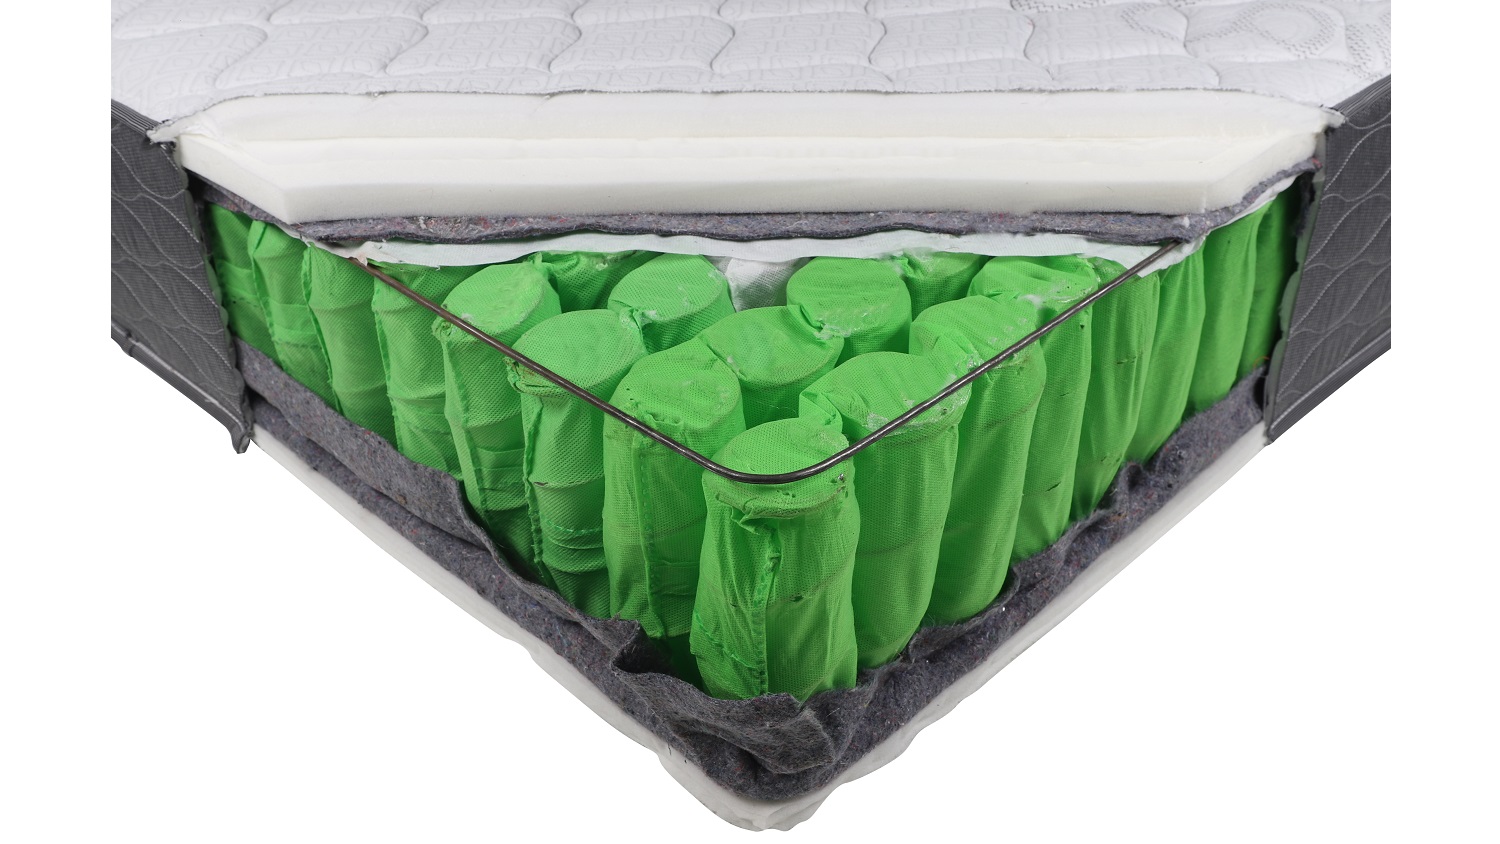 king koil conforma essence plush mattress reviews